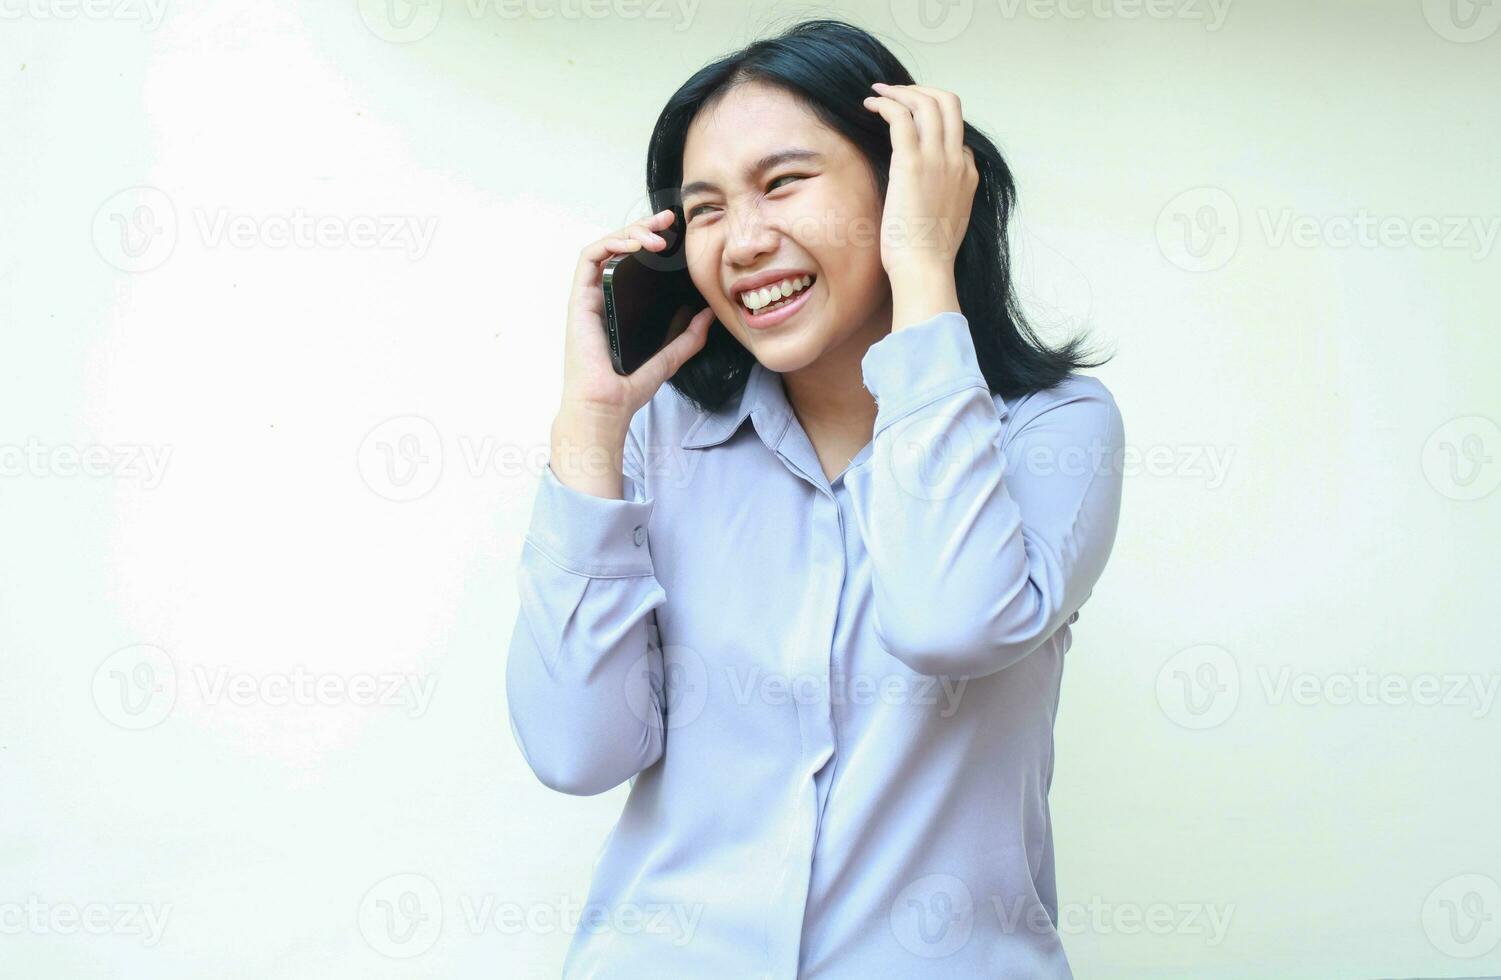 verheugd Aziatisch jong bedrijf vrouw lachend terwijl spreken Aan smartphone Holding haar donker haar- kijken weg slijtage formeel Purper overhemd staand over- wit achtergrond foto